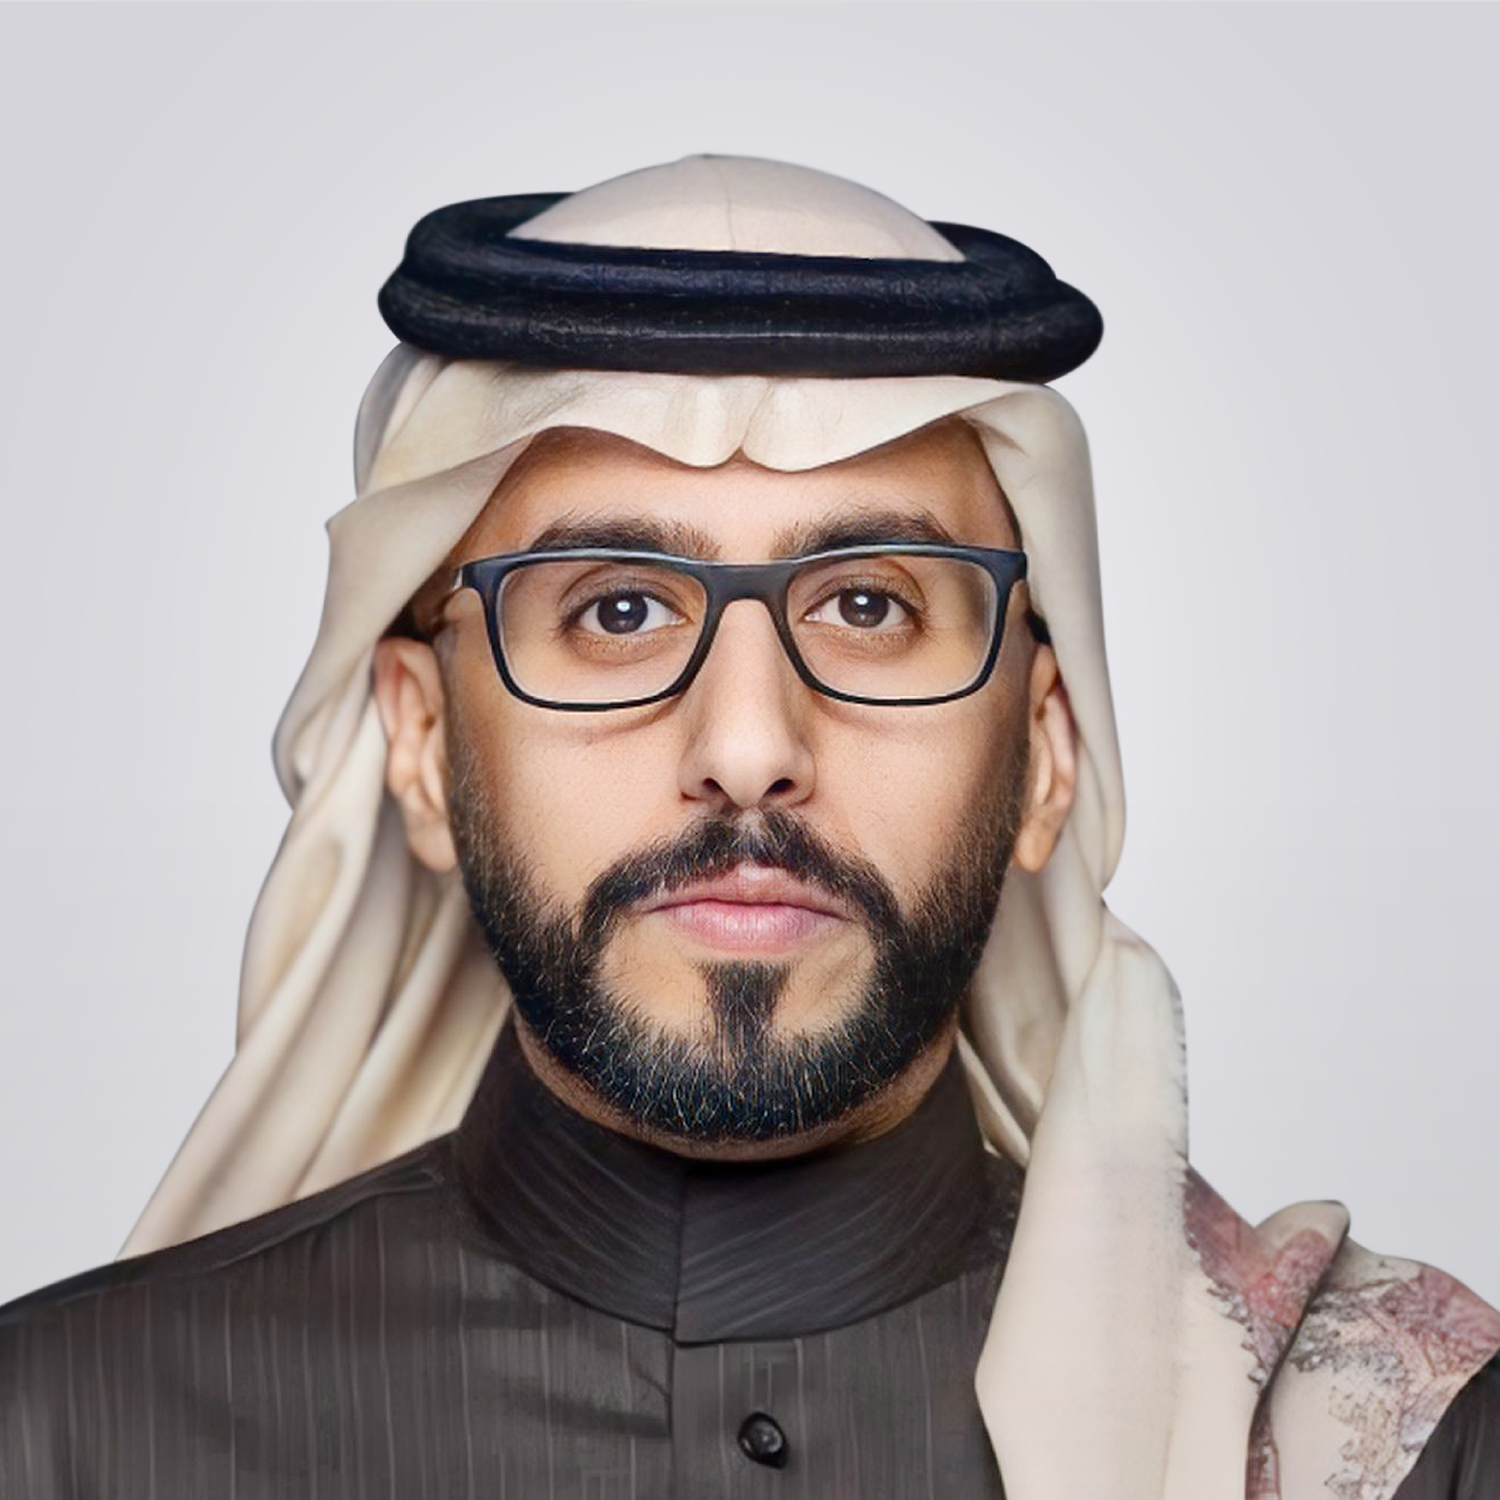 Mr. Fahad Muflah Al Kahtani